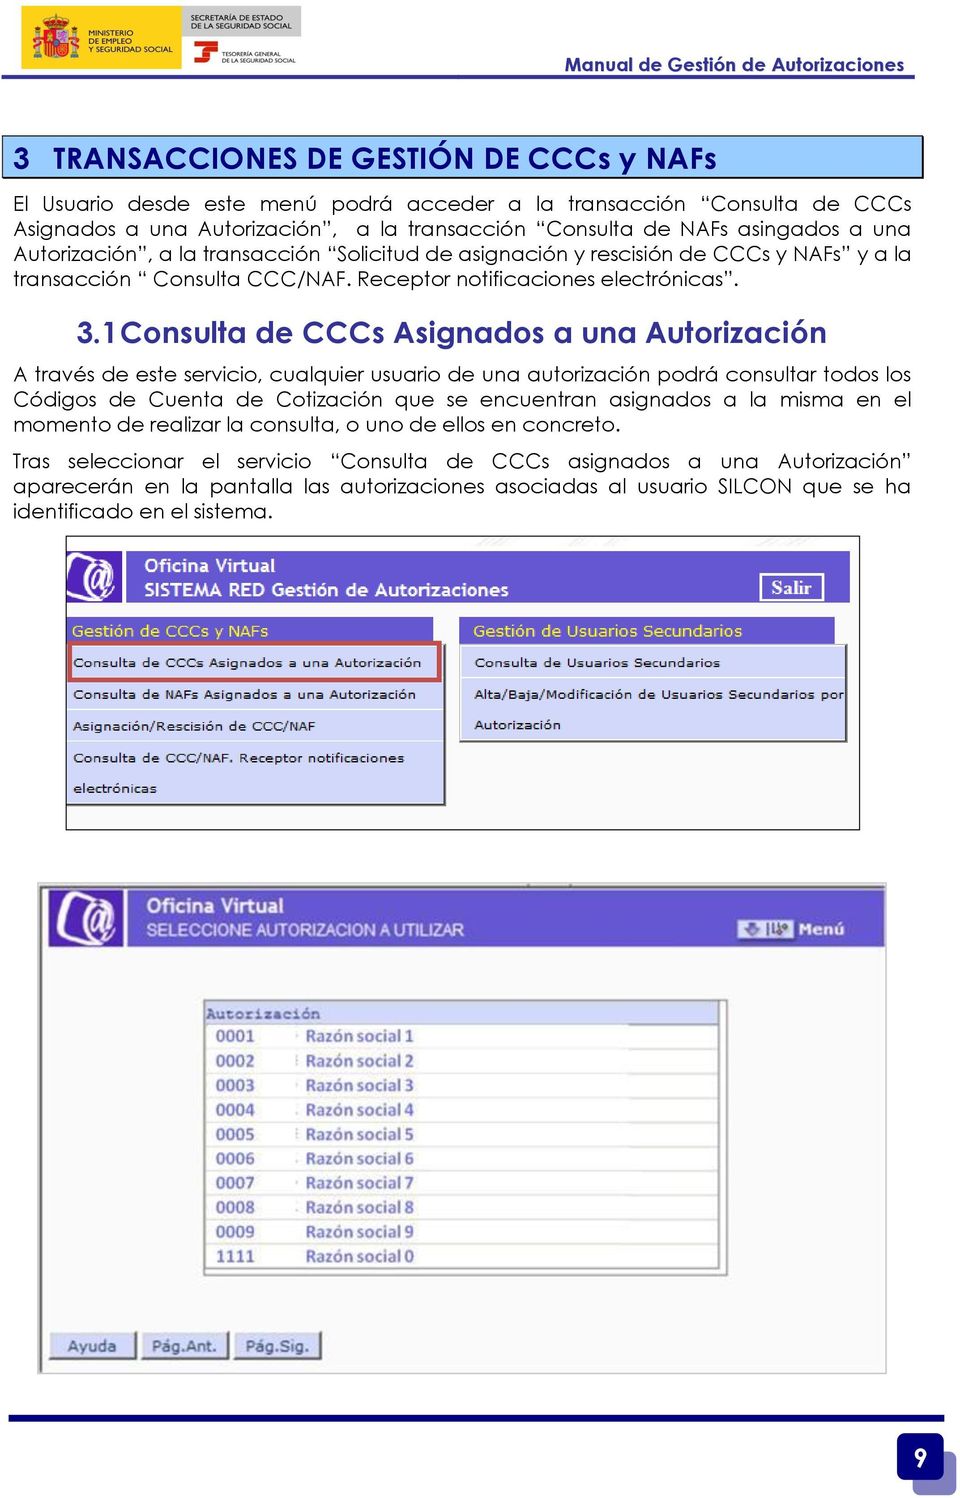 1 Consulta de CCCs Asignados a una Autorización A través de este servicio, cualquier usuario de una autorización podrá consultar todos los Códigos de Cuenta de Cotización que se encuentran asignados